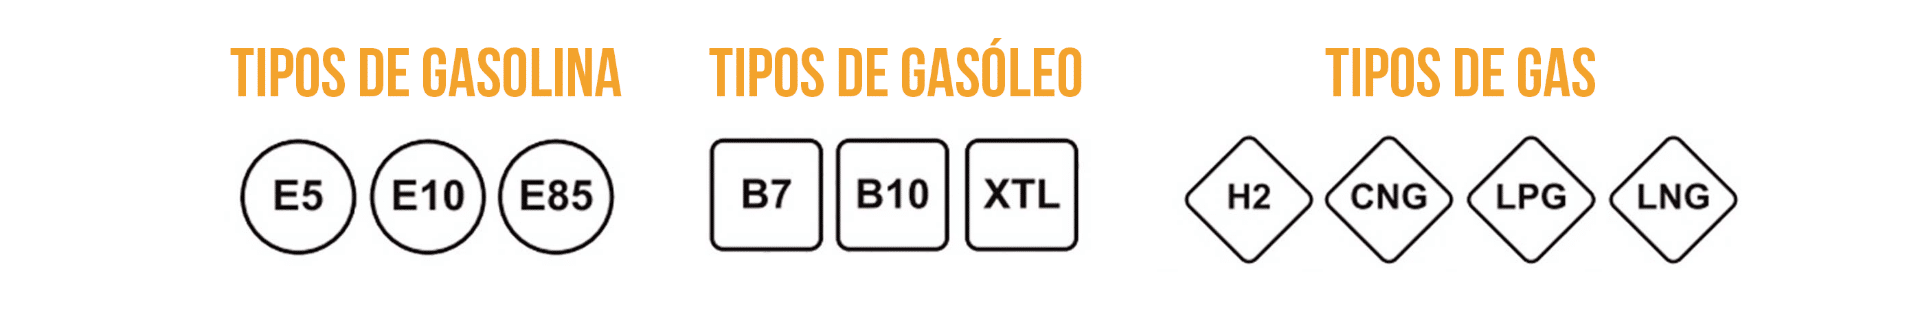 Nuevo etiquetado en el combustible - Combustible en Jaén